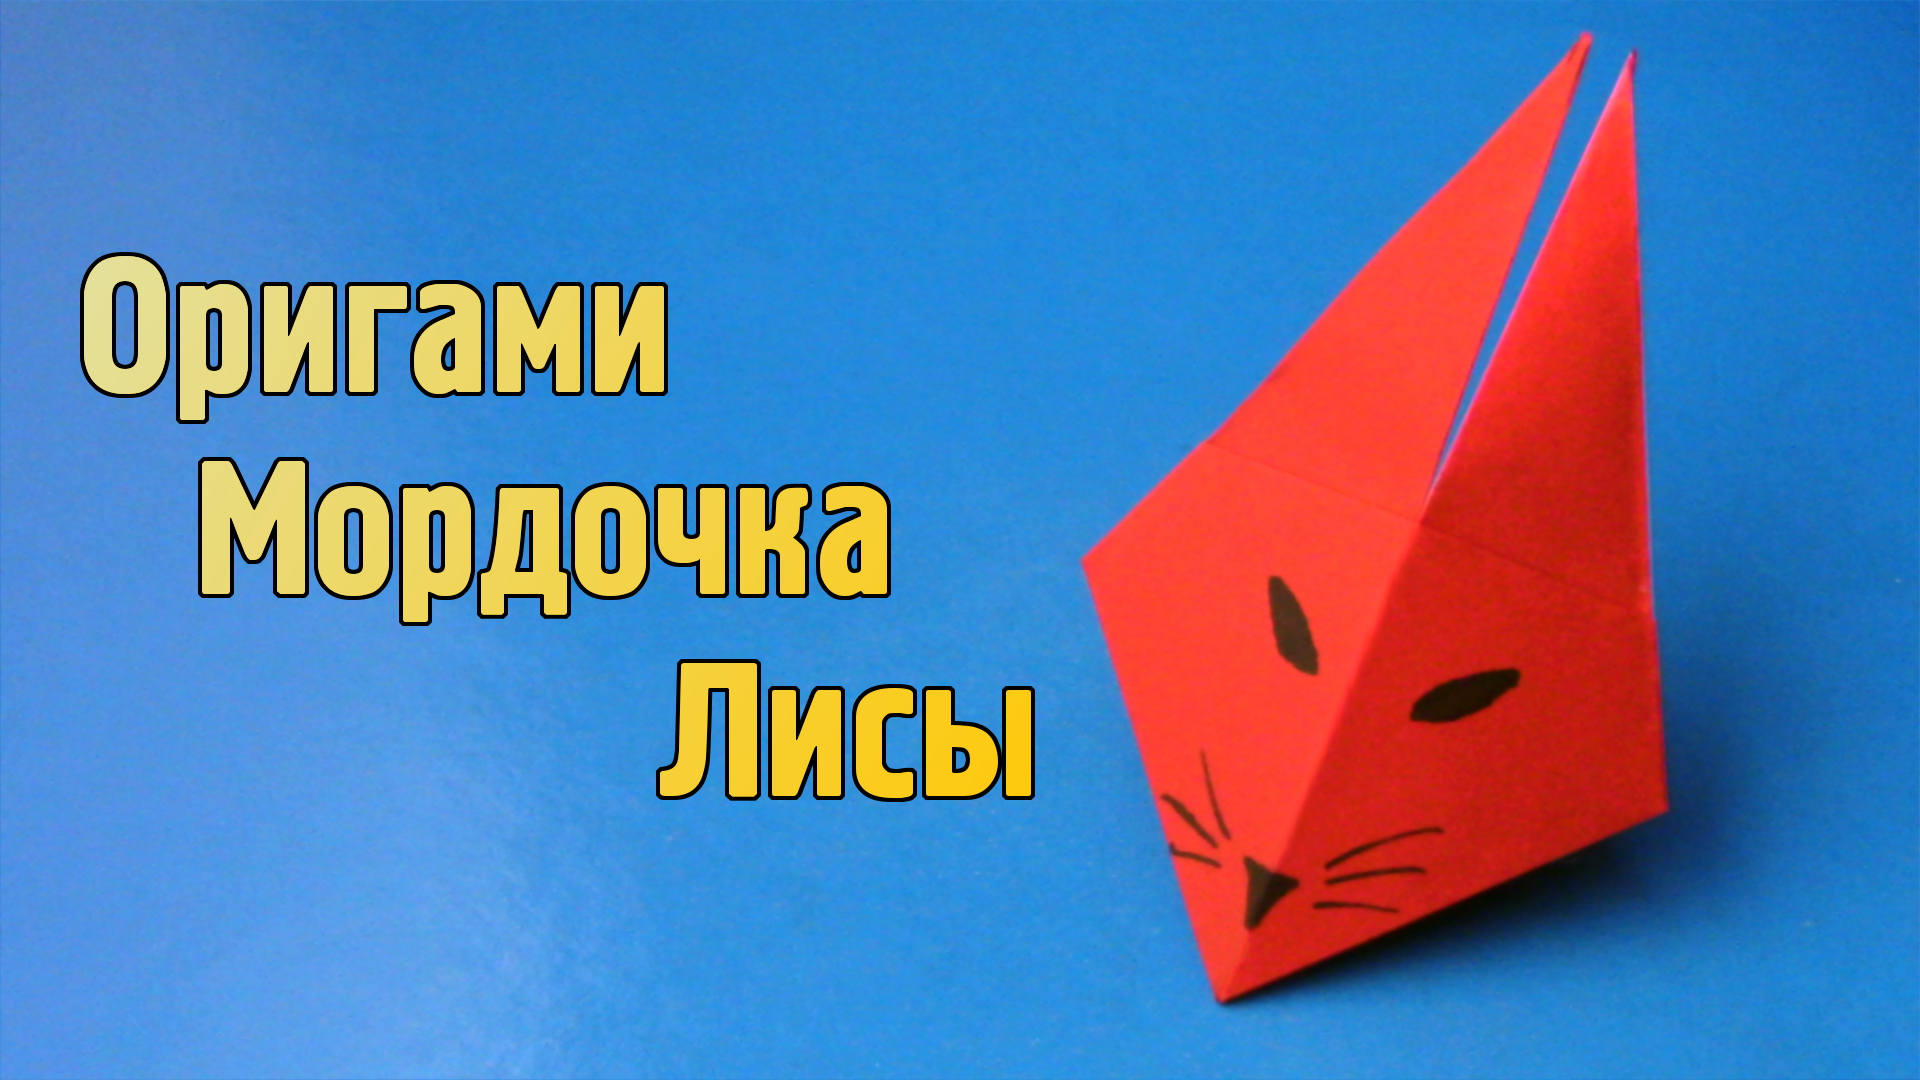 LikeTV Поделки, Оригами, DIY своими руками, Слаймы – Telegram